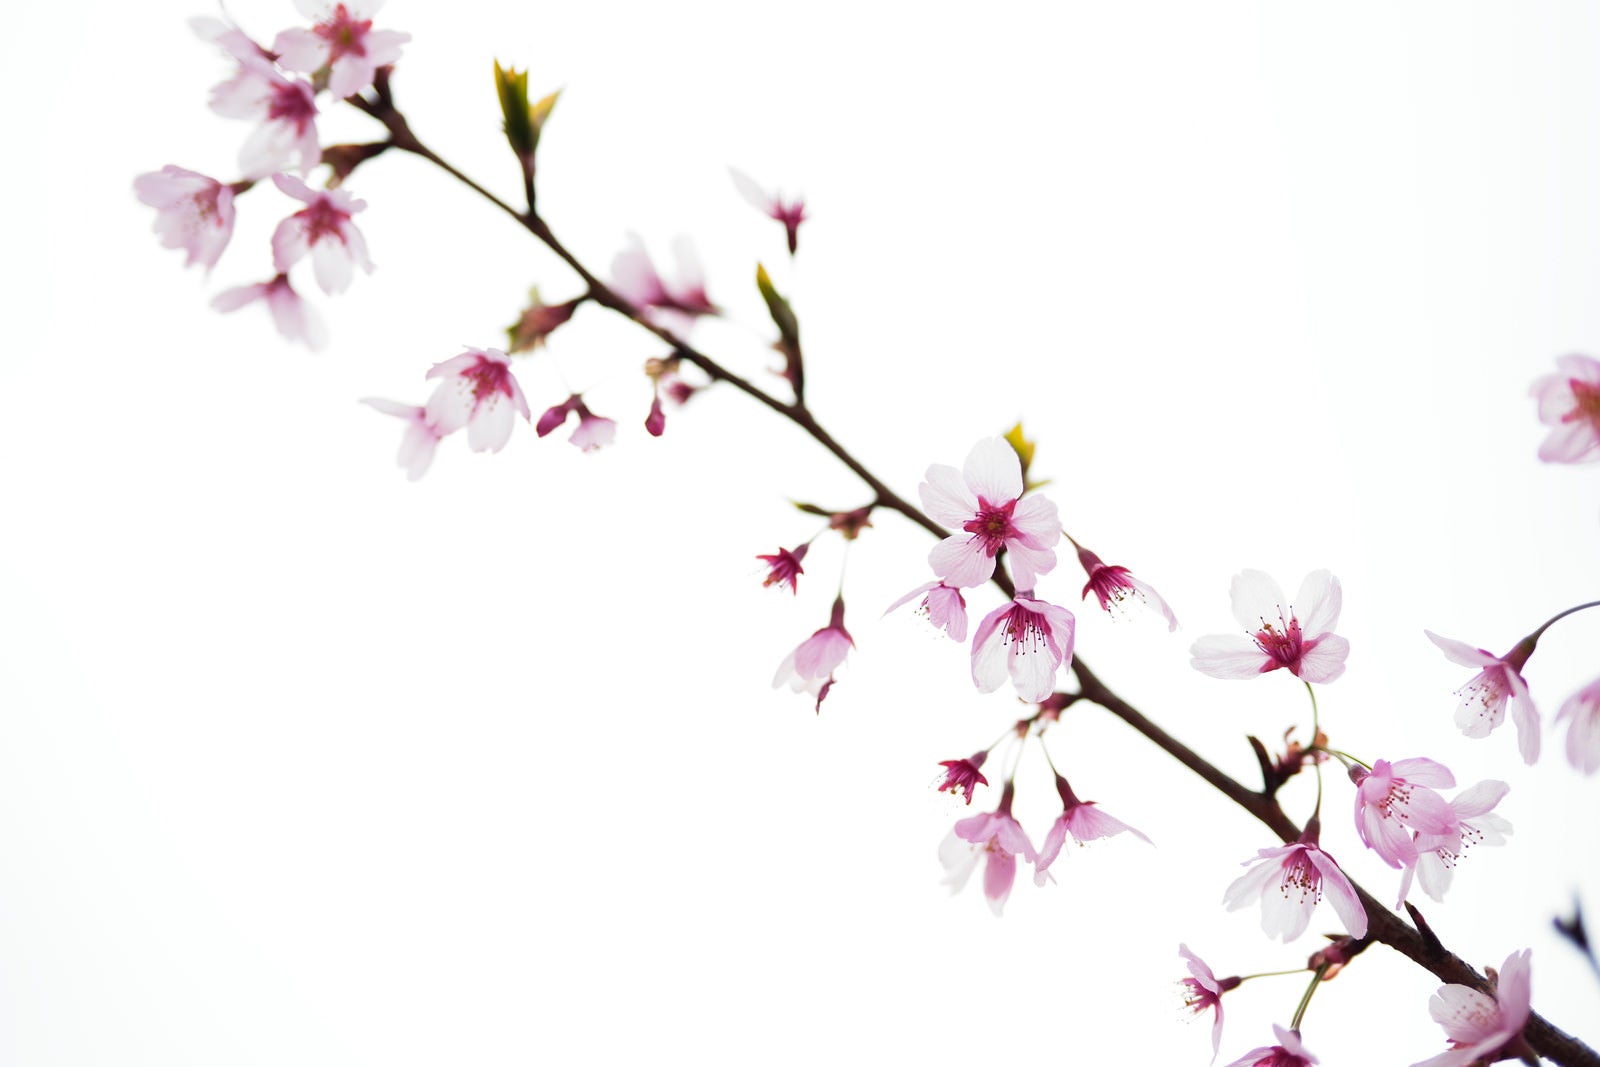 「曇り空の下の桜の花びら」の写真